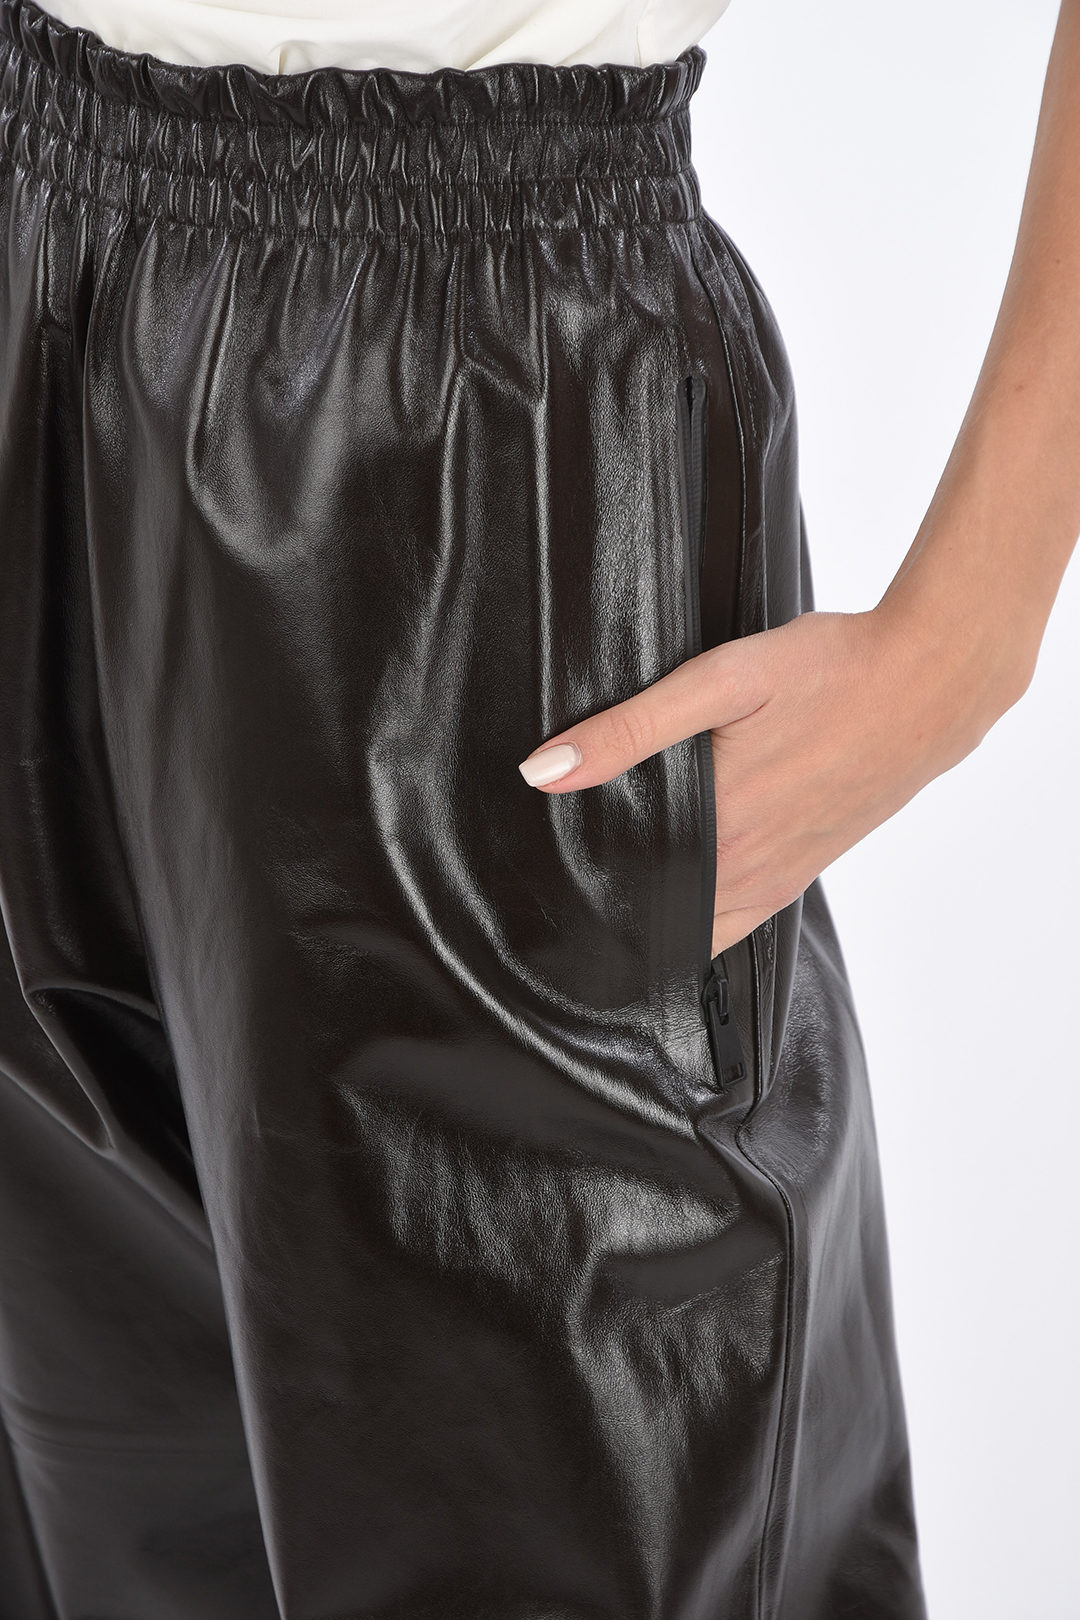 Bottega Veneta Shiny Leather Pants with Waistband and Ankle Velcro